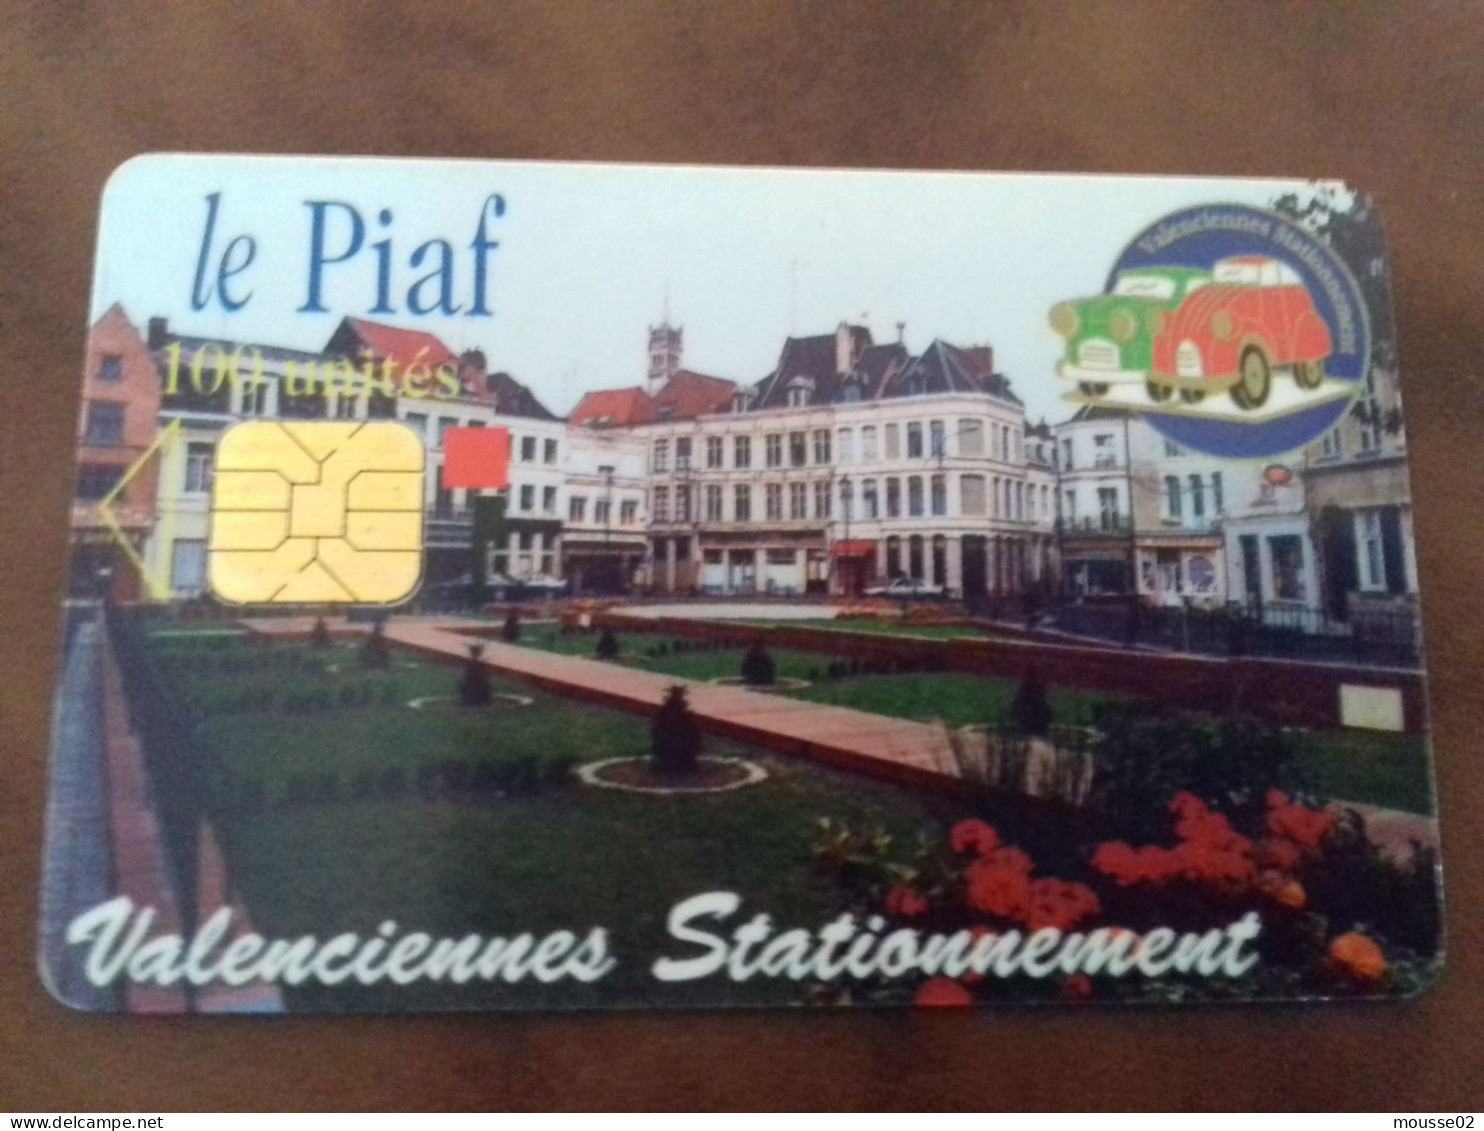 Carte De Stationnement  PIAF VALENCIENNES DU  09/ 1999 - Parkkarten